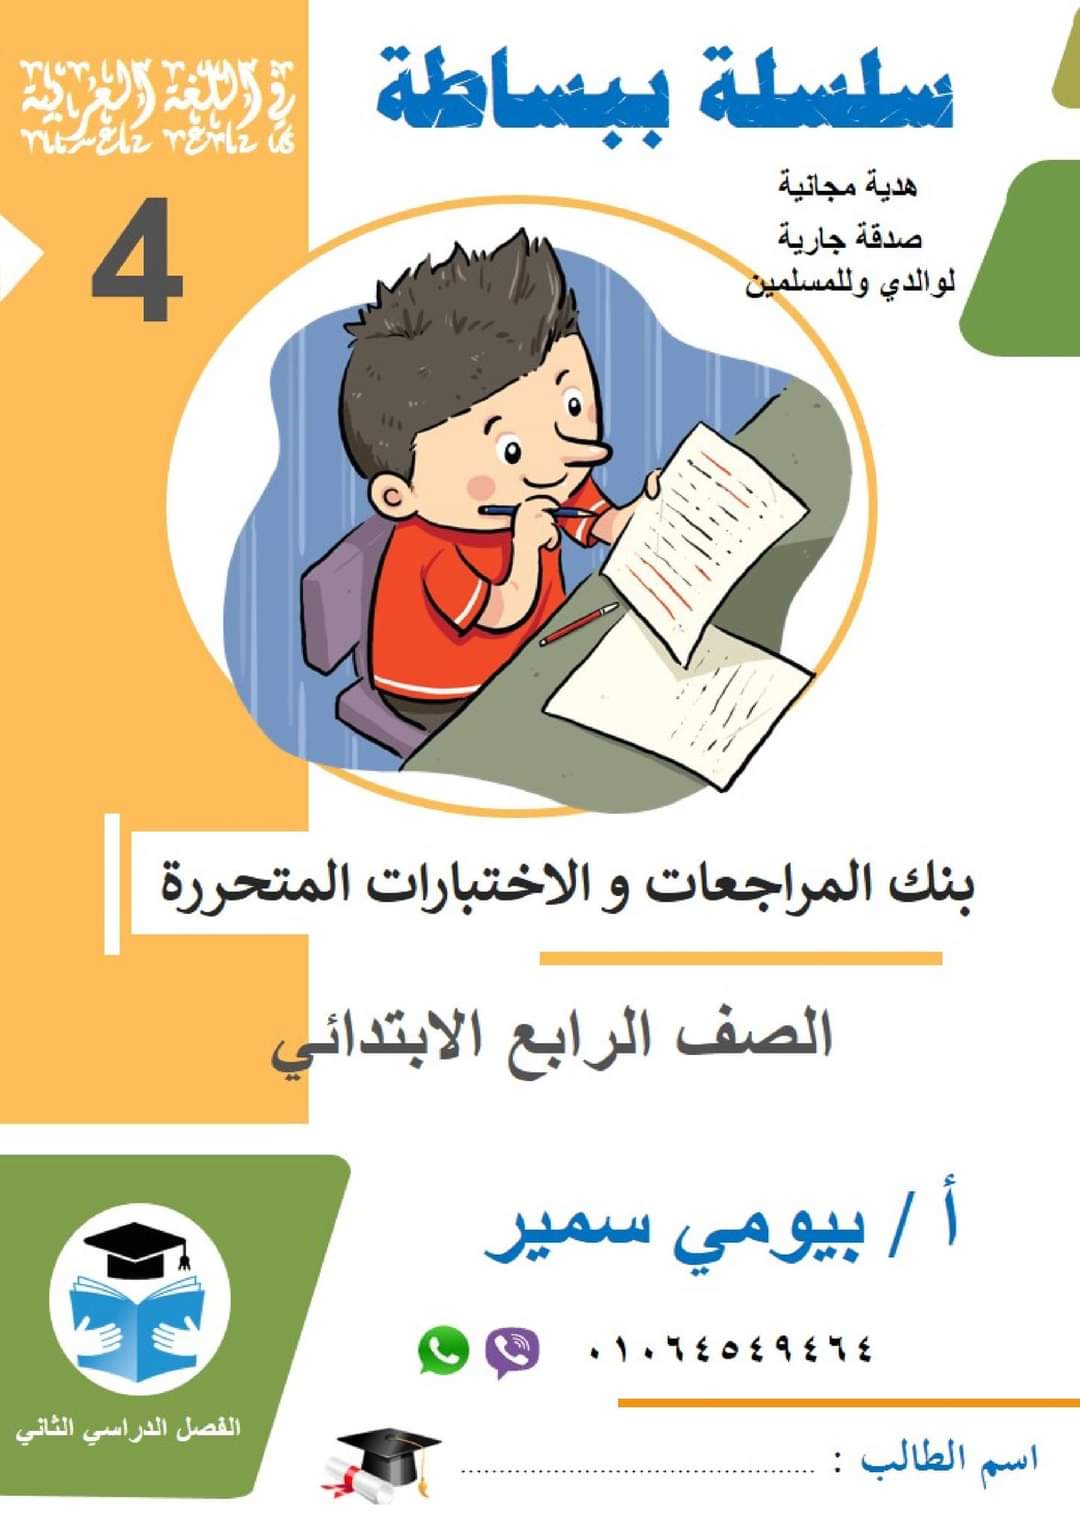 تحميل مذكرة ببساطة لمراجعة اللغة العربية الصف الرابع الابتدائي الترم الثاني